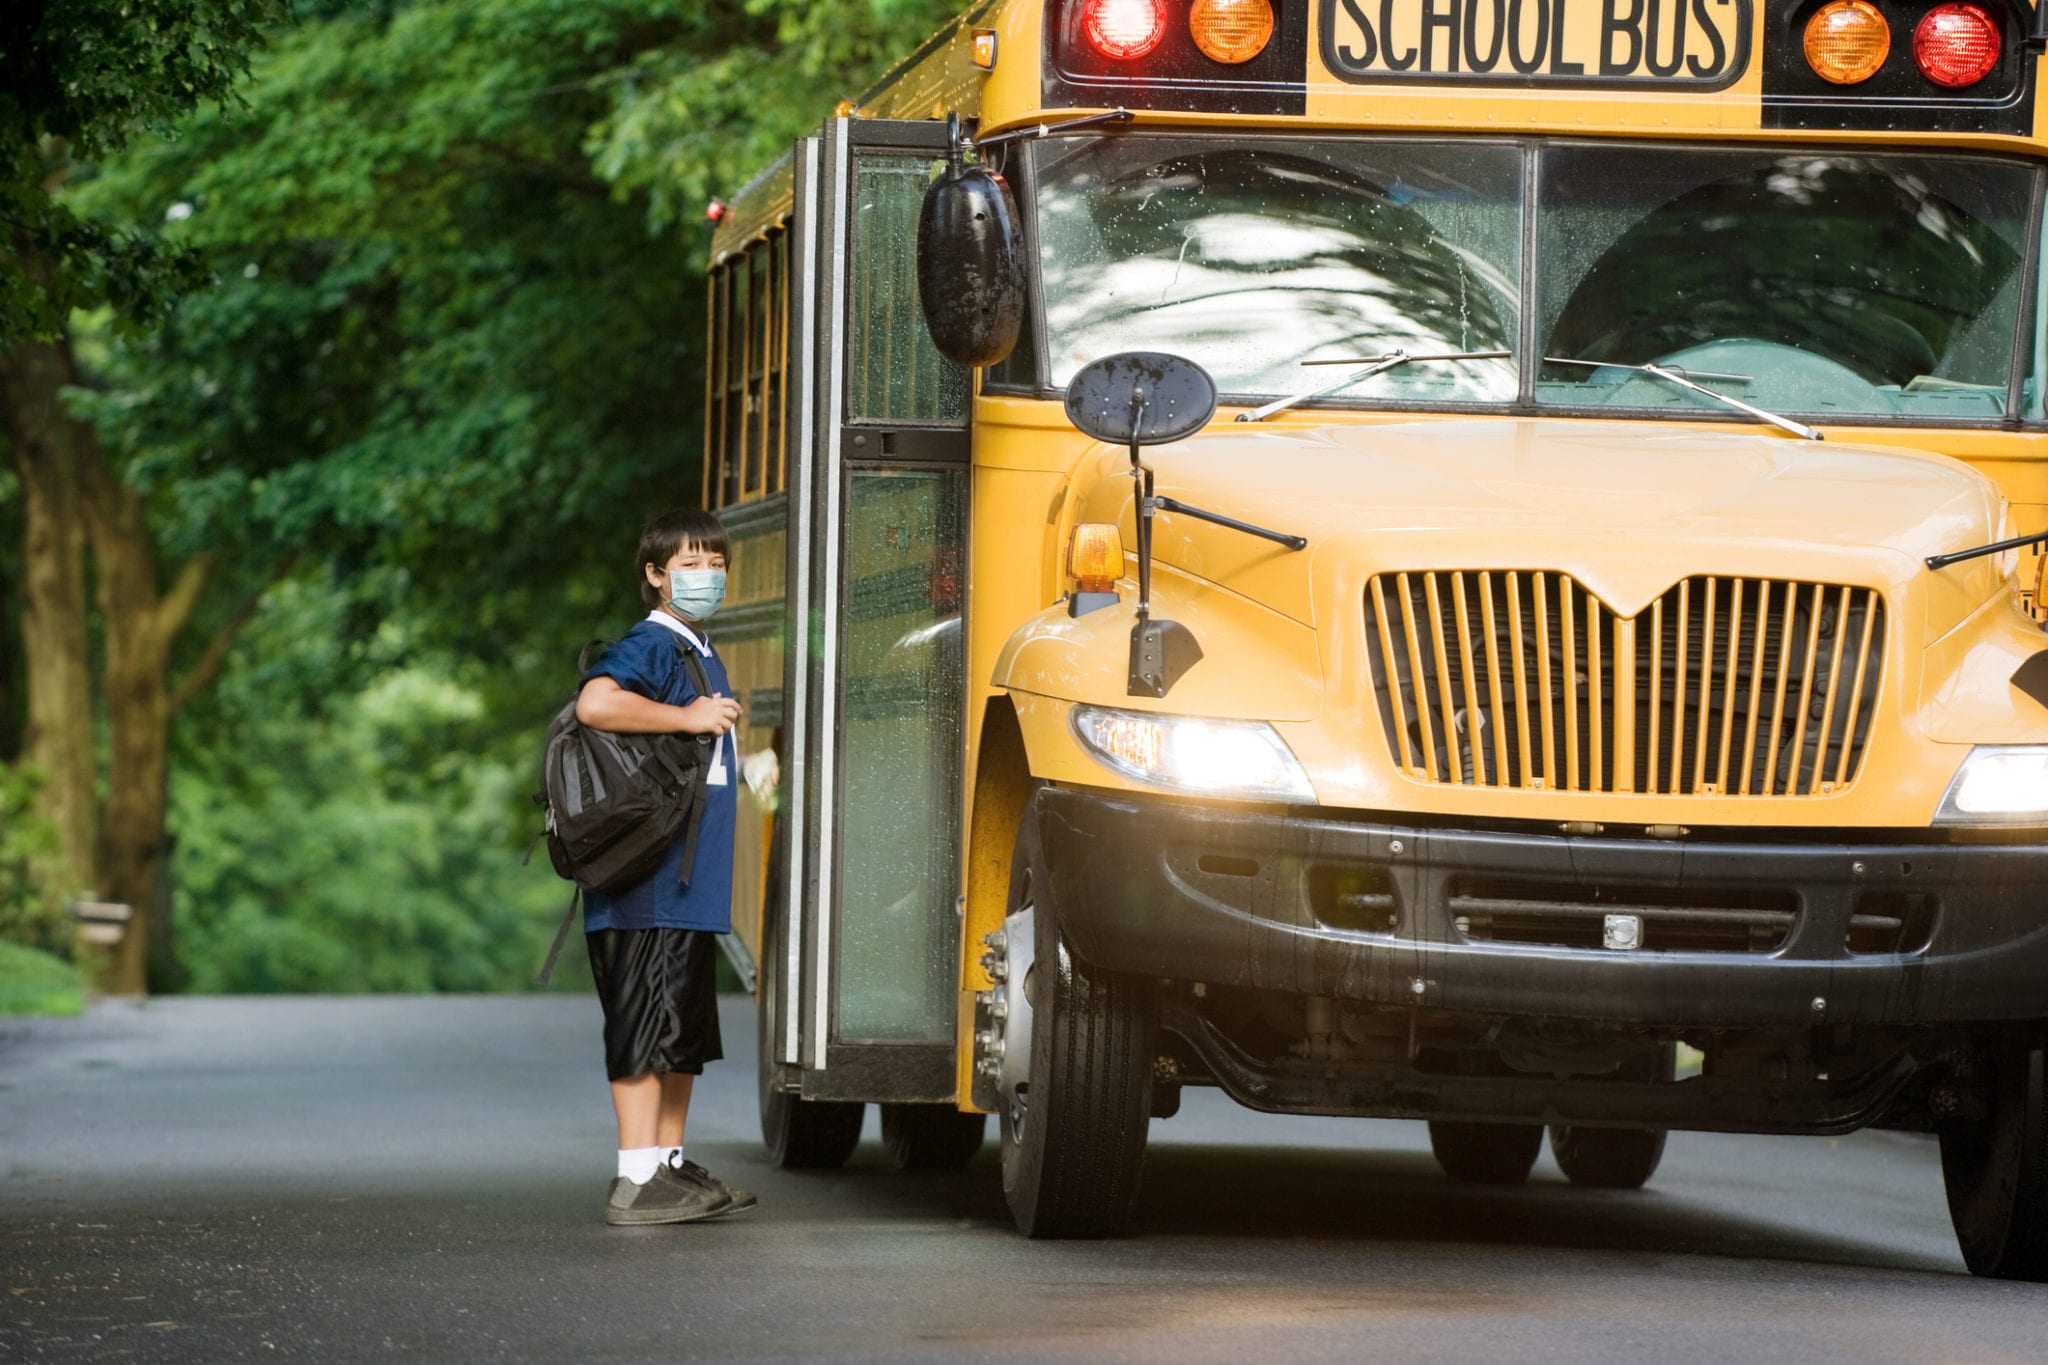 School Bus Liability Insurance